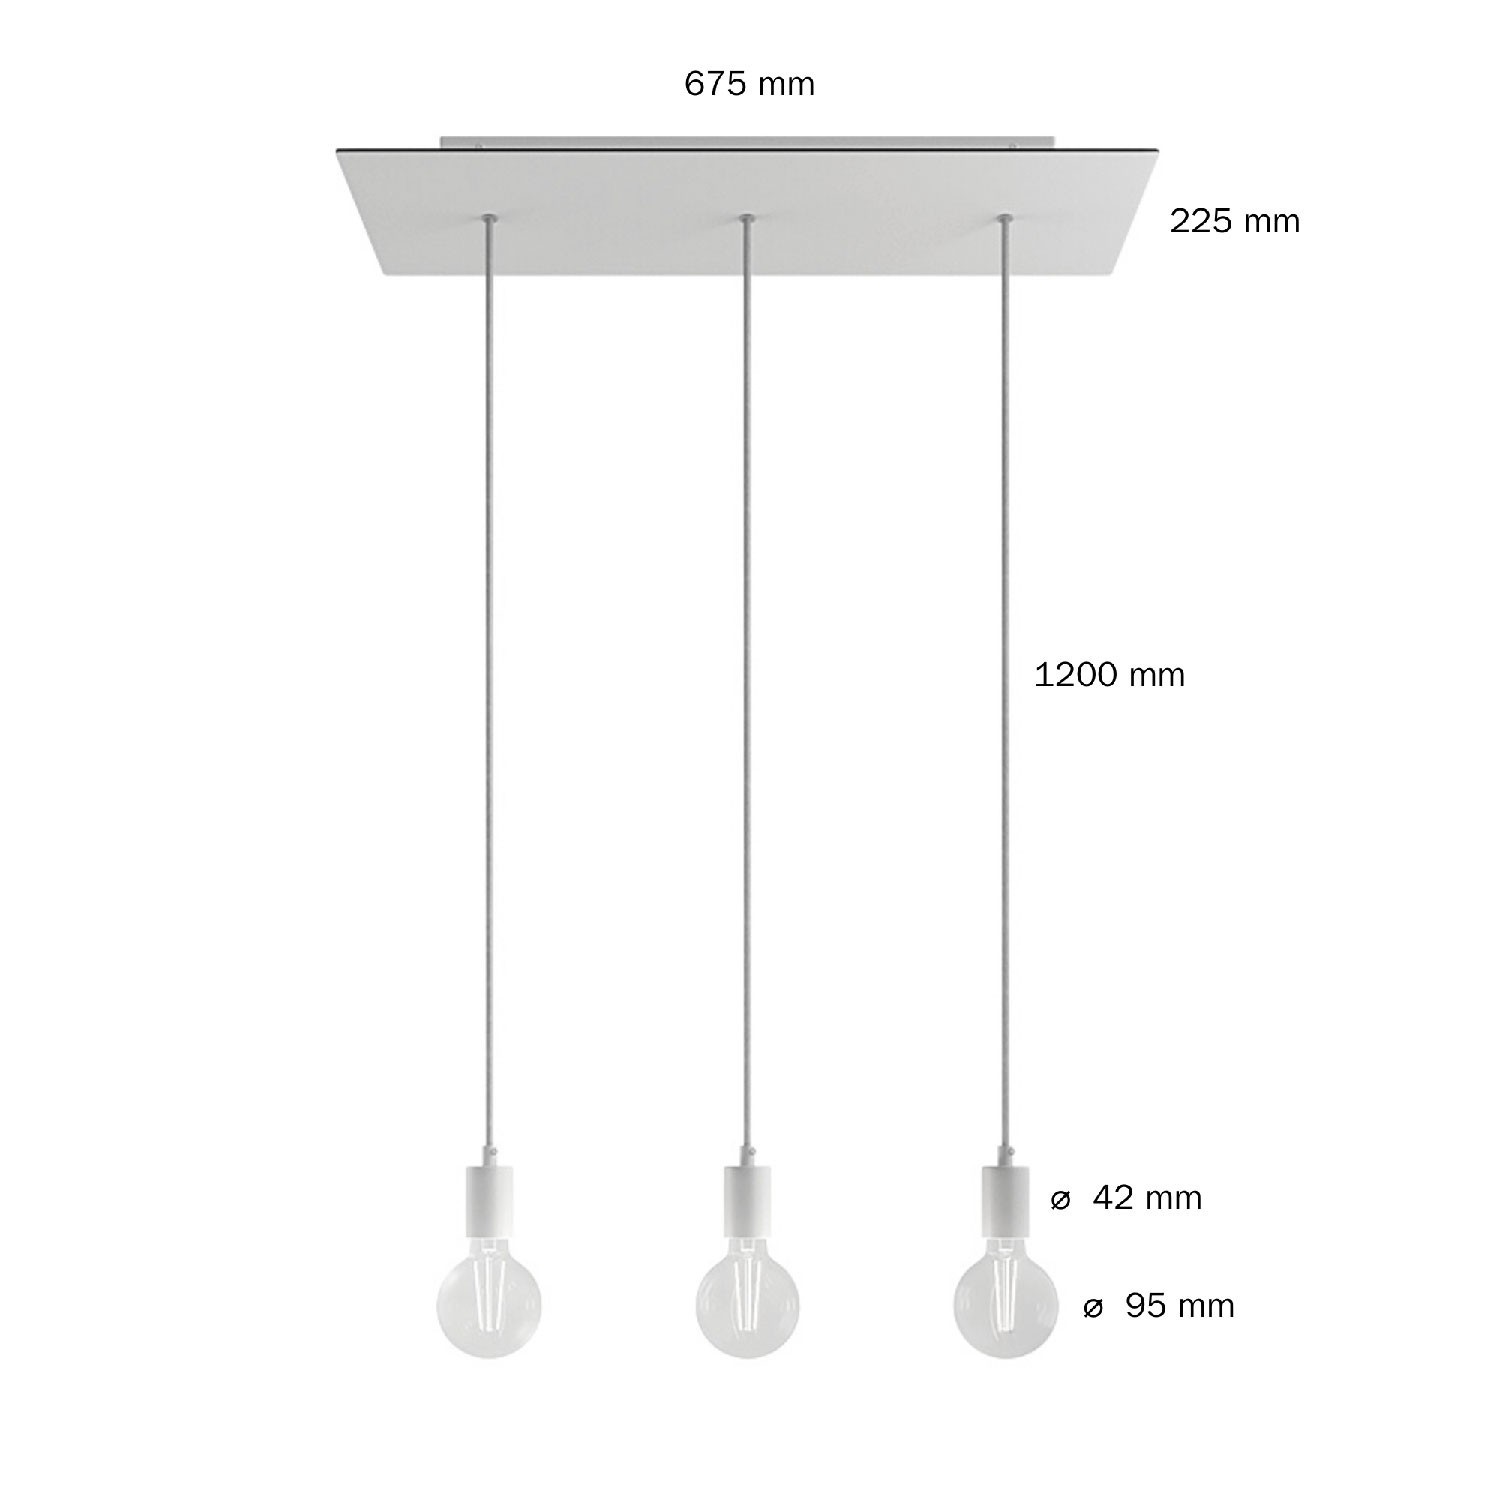 Viseća svjetiljka s 3 ispusta, pravokutnom XXL Rose-One rozetom 675 mm, tekstilnim kabelom, komponente u bojama metala.